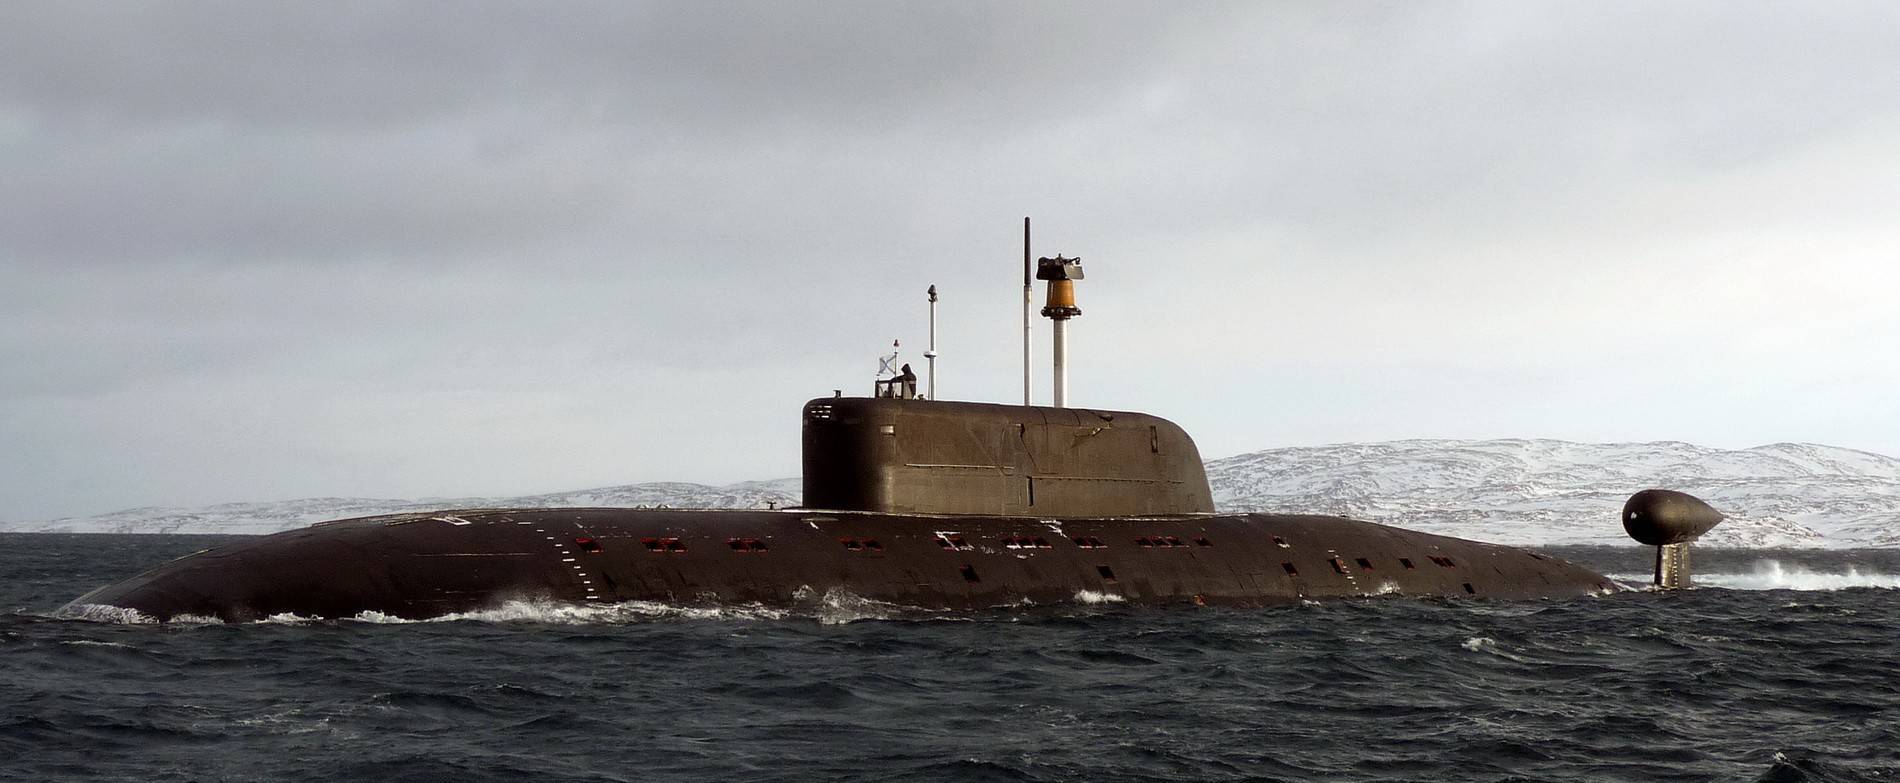 Подводные лодки проекта 945а «кондор» — википедия. что такое подводные лодки проекта 945а «кондор»